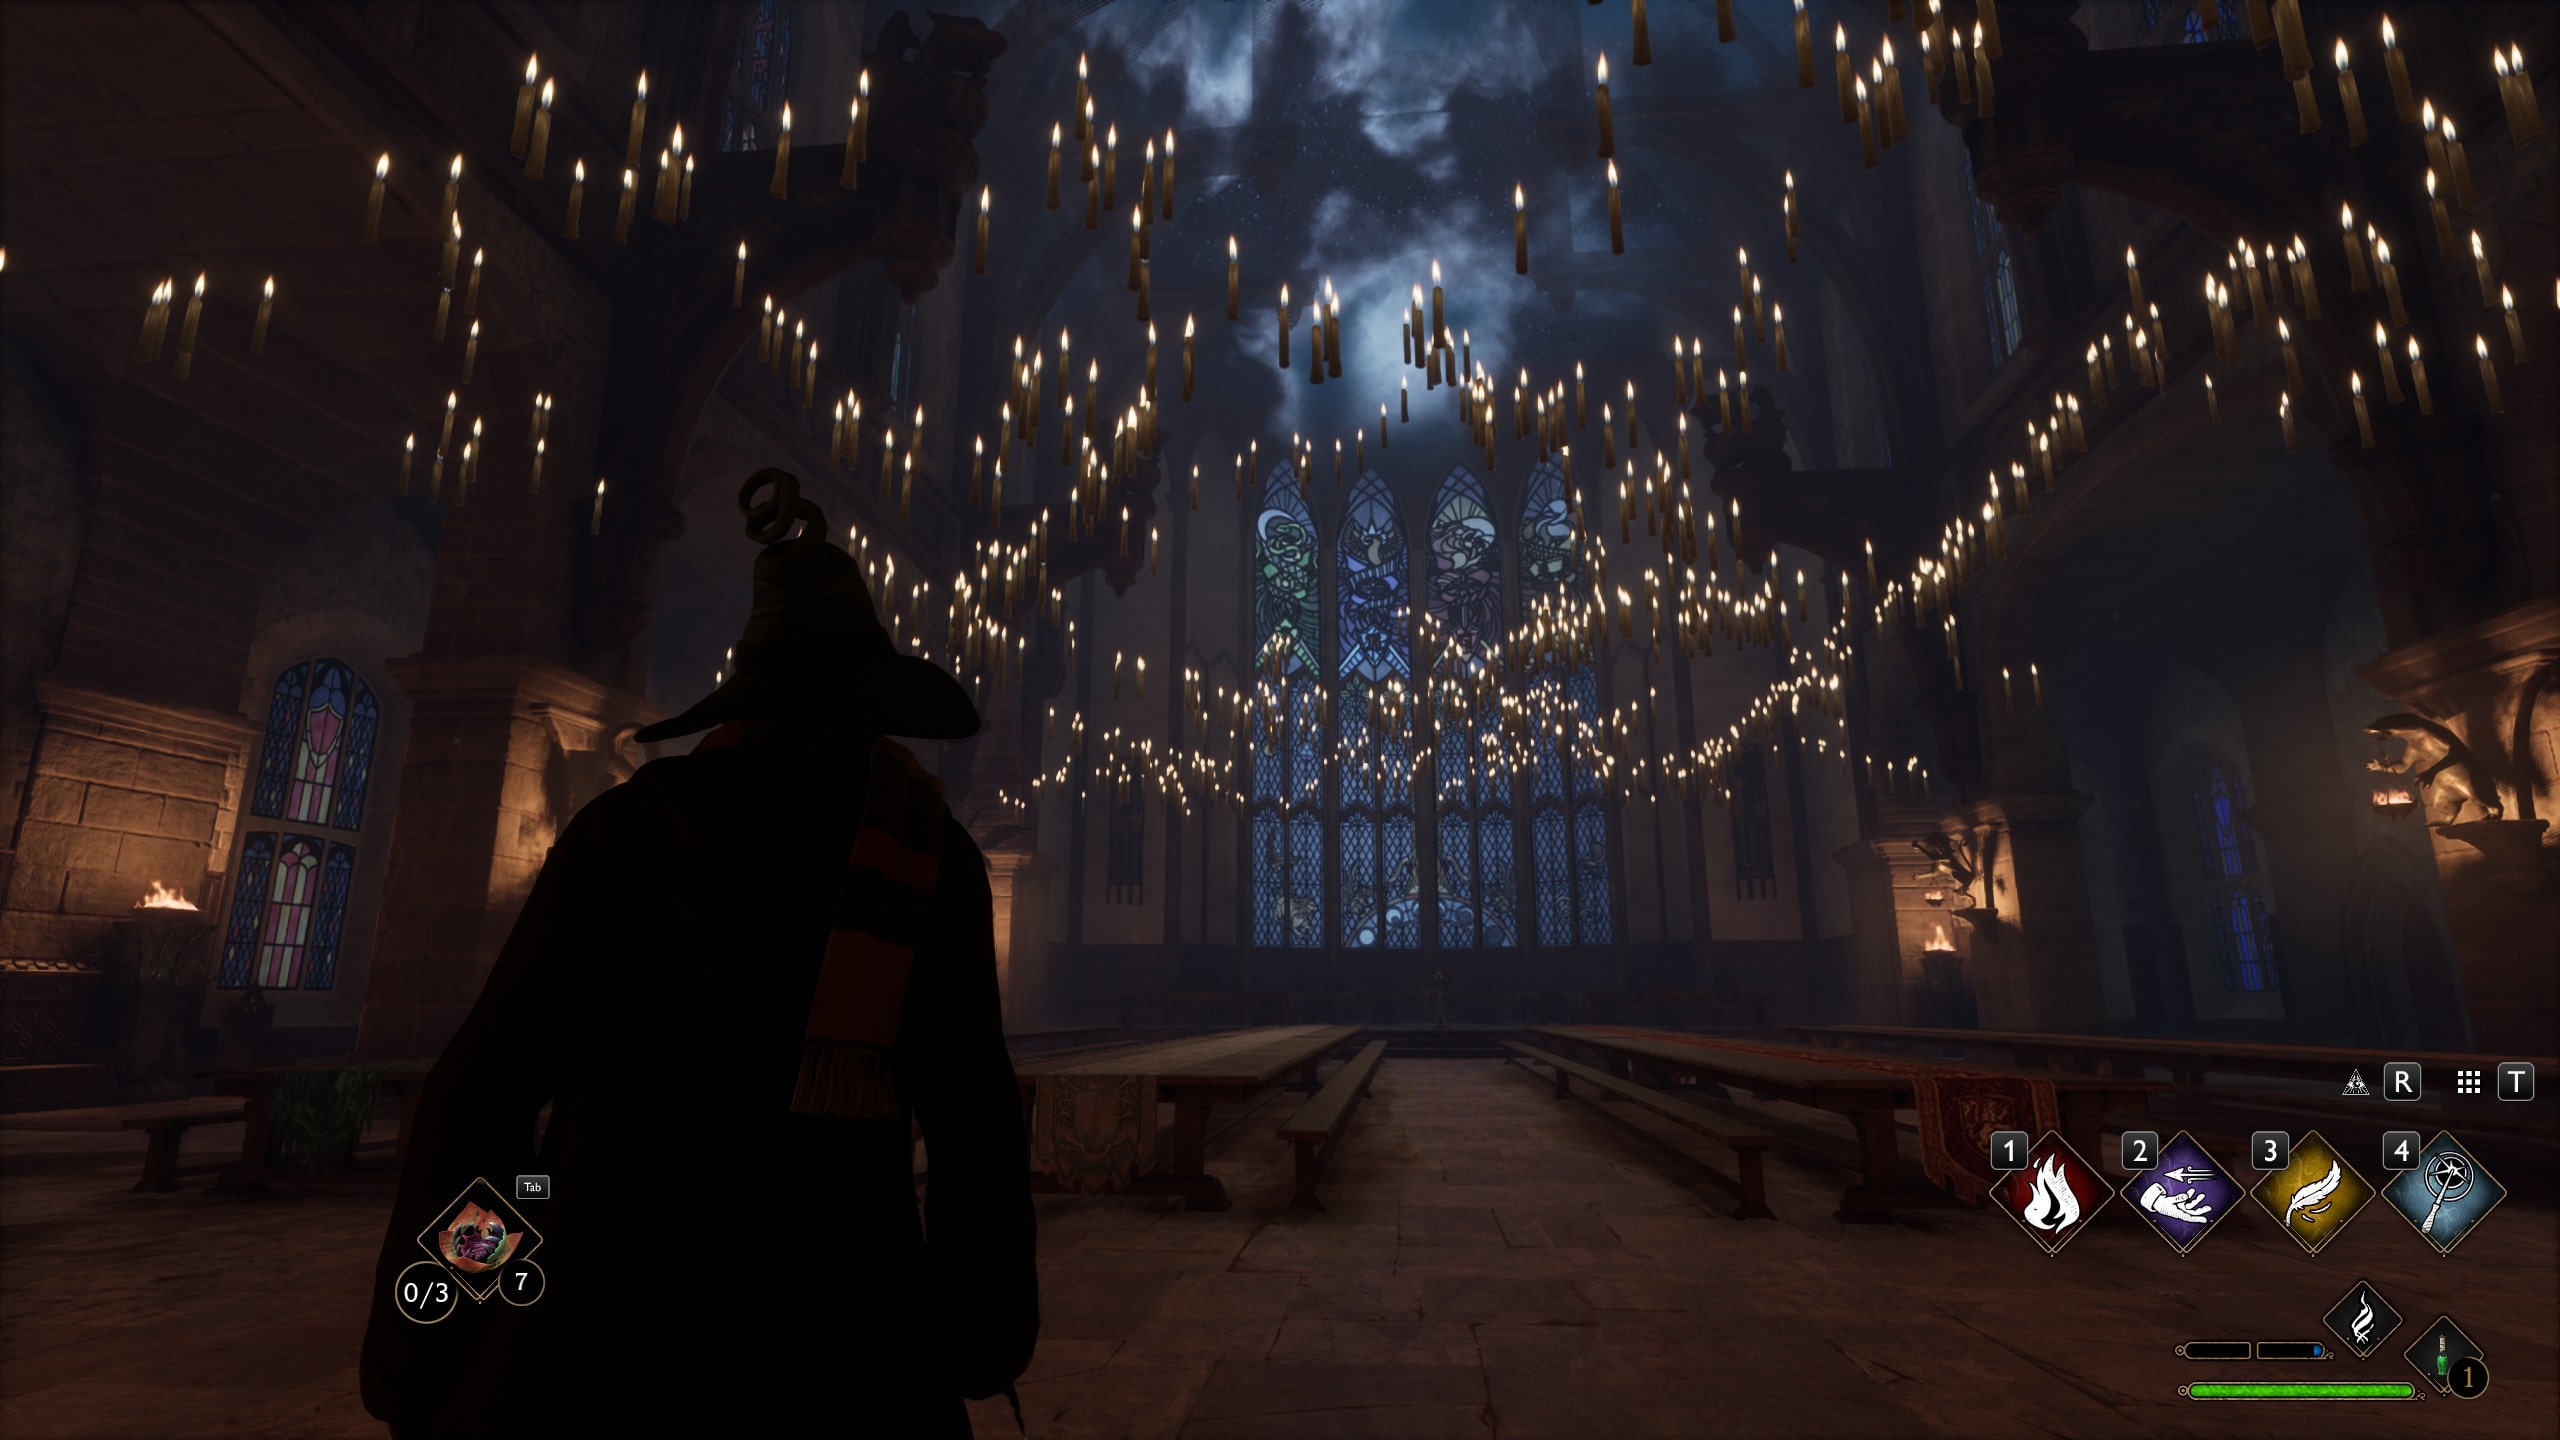 Dargestellt ist ein Screenshot aus Hogwarts Legacy. Zu sehen ist eine große Halle mit langen Bänken und Tischen. In der Luft schweben zahlreiche Kerzen. Statt einer Decke, ist eine wolkiger Himmel zu sehen.